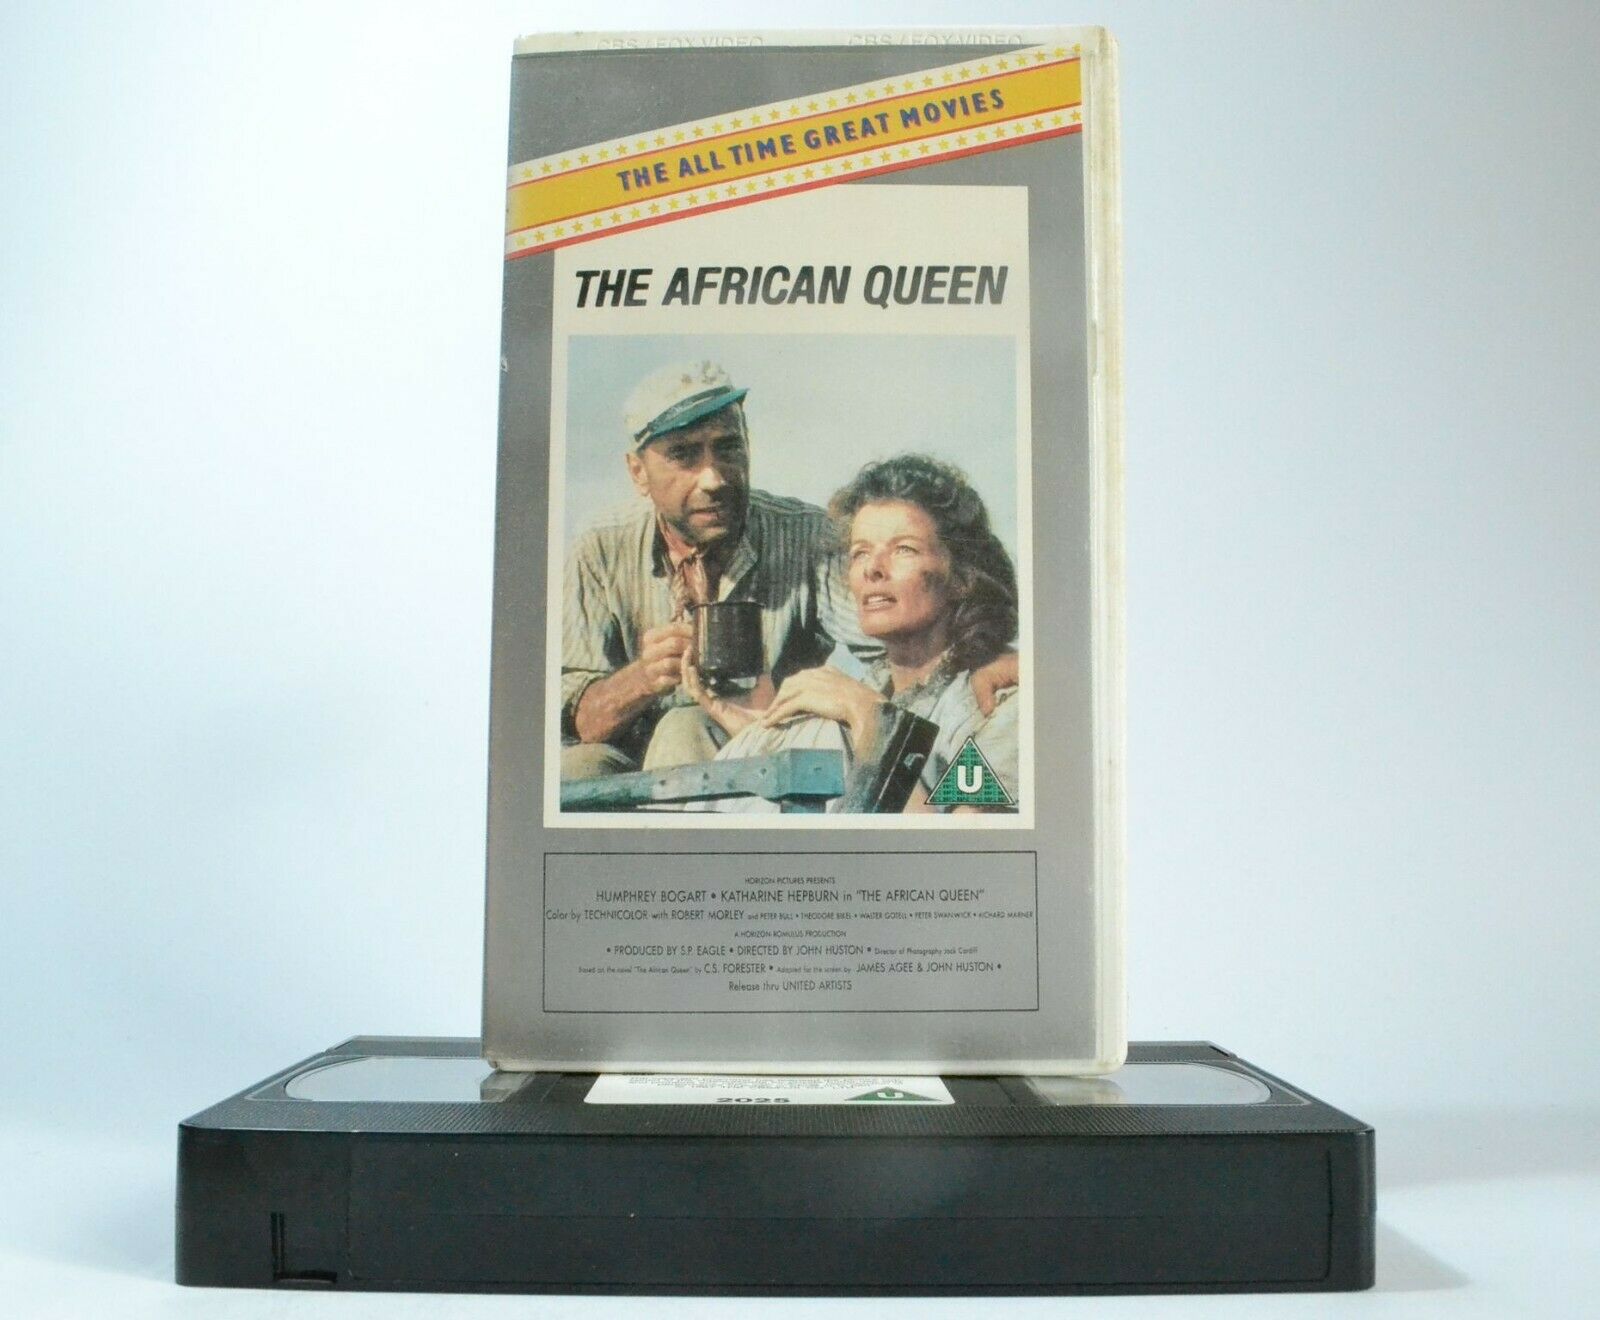 The African Queen: Romantic Adventure [Humphrey Bogart / Katherine Hepburn] VHS-